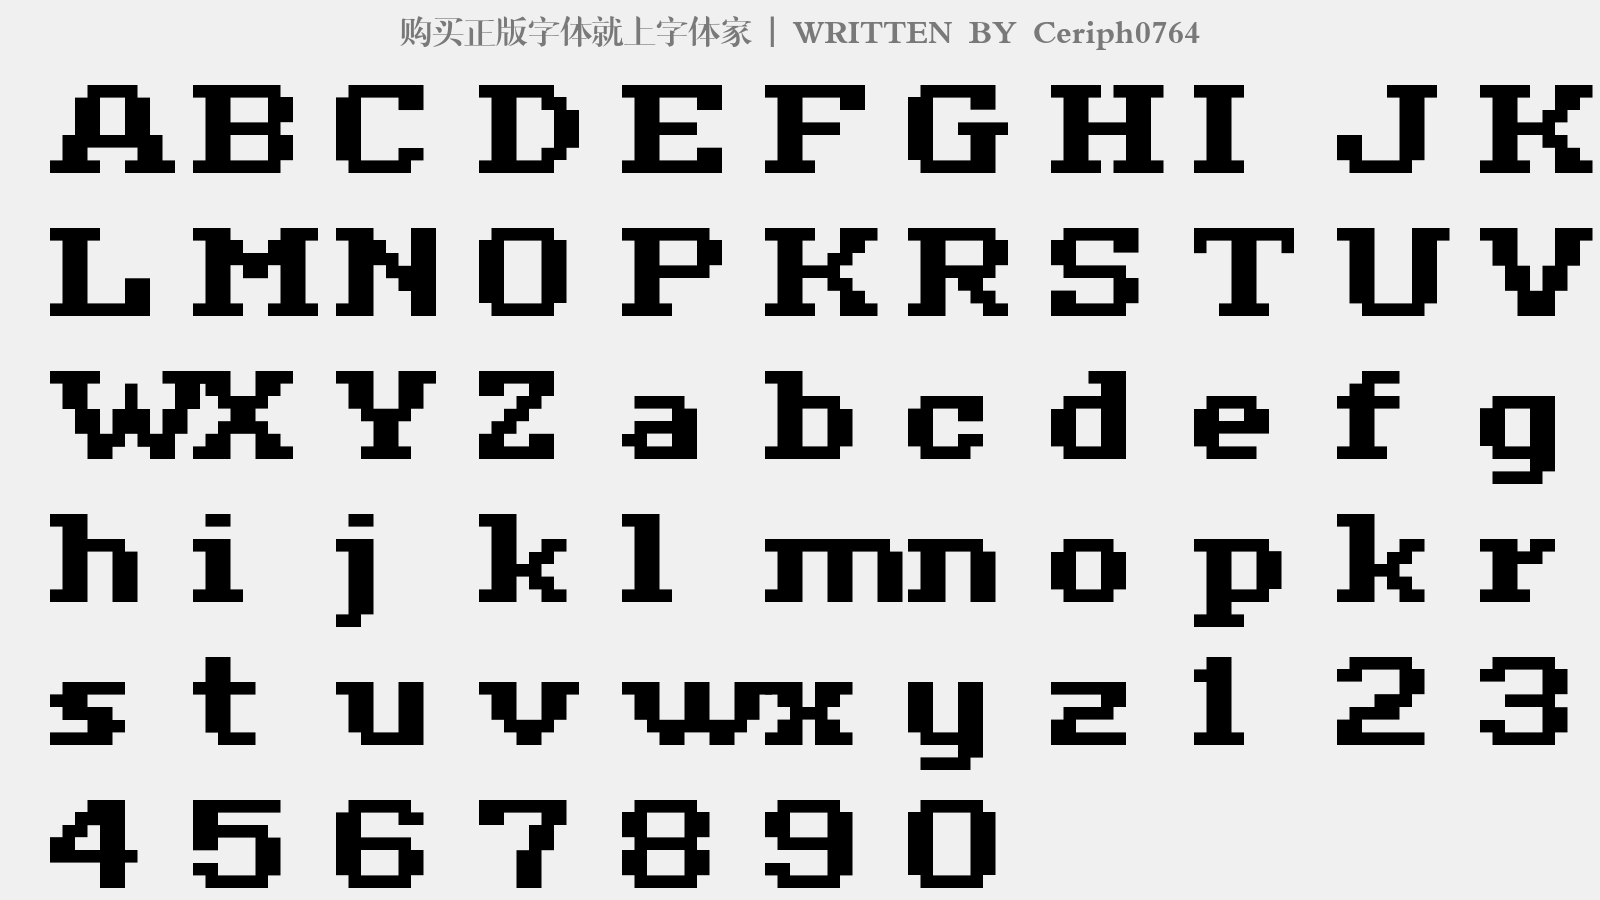 Ceriph0764 - 大写字母/小写字母/数字